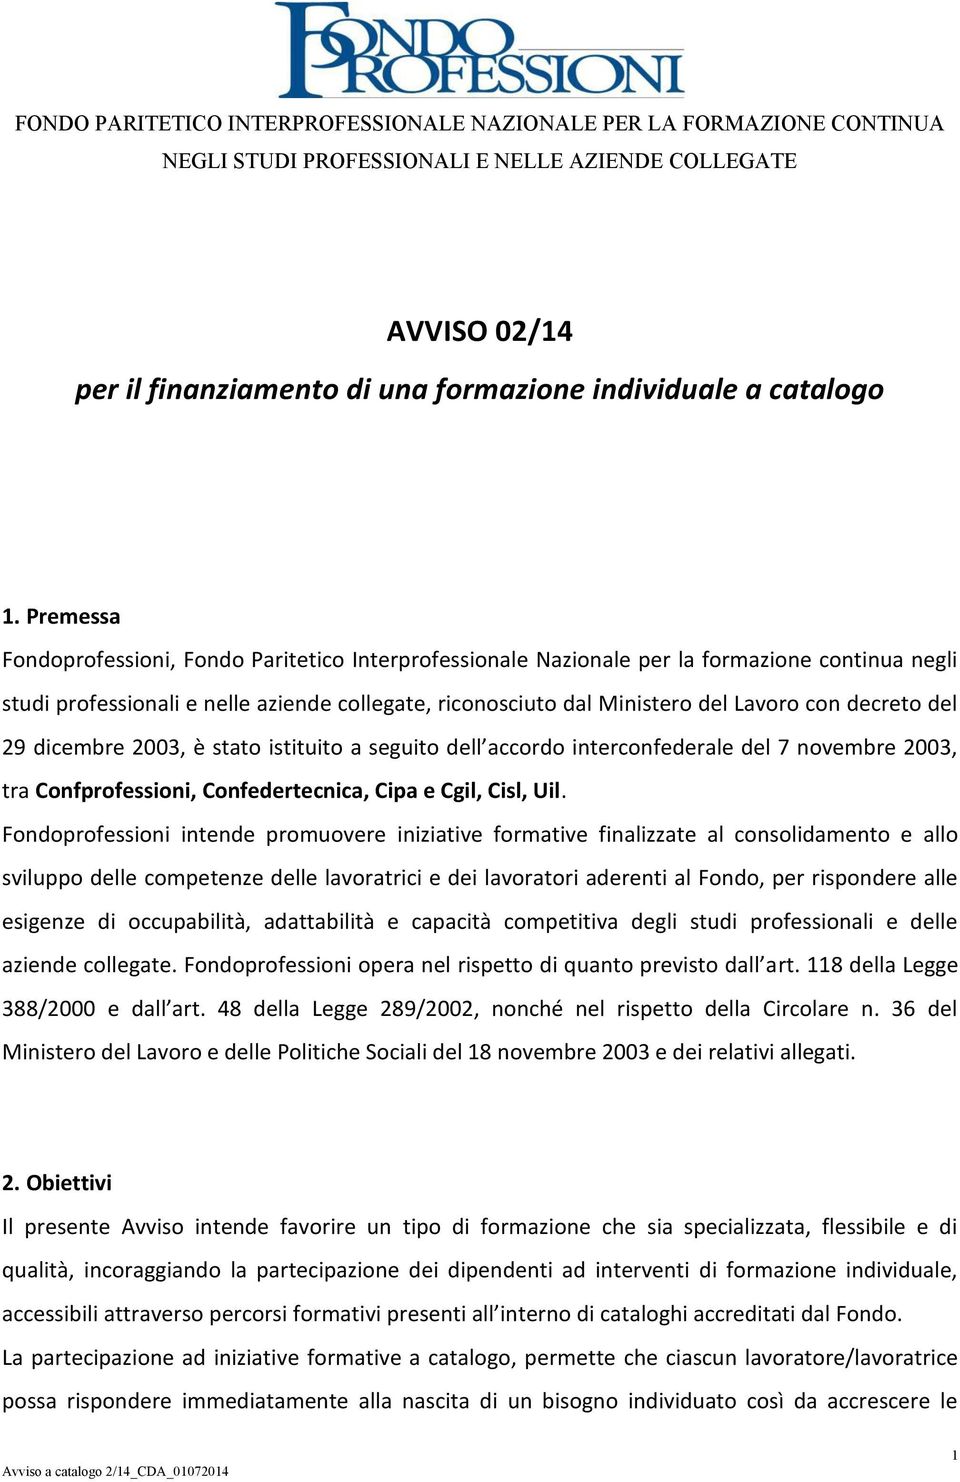 decreto del 29 dicembre 2003, è stato istituito a seguito dell accordo interconfederale del 7 novembre 2003, tra Confprofessioni, Confedertecnica, Cipa e Cgil, Cisl, Uil.